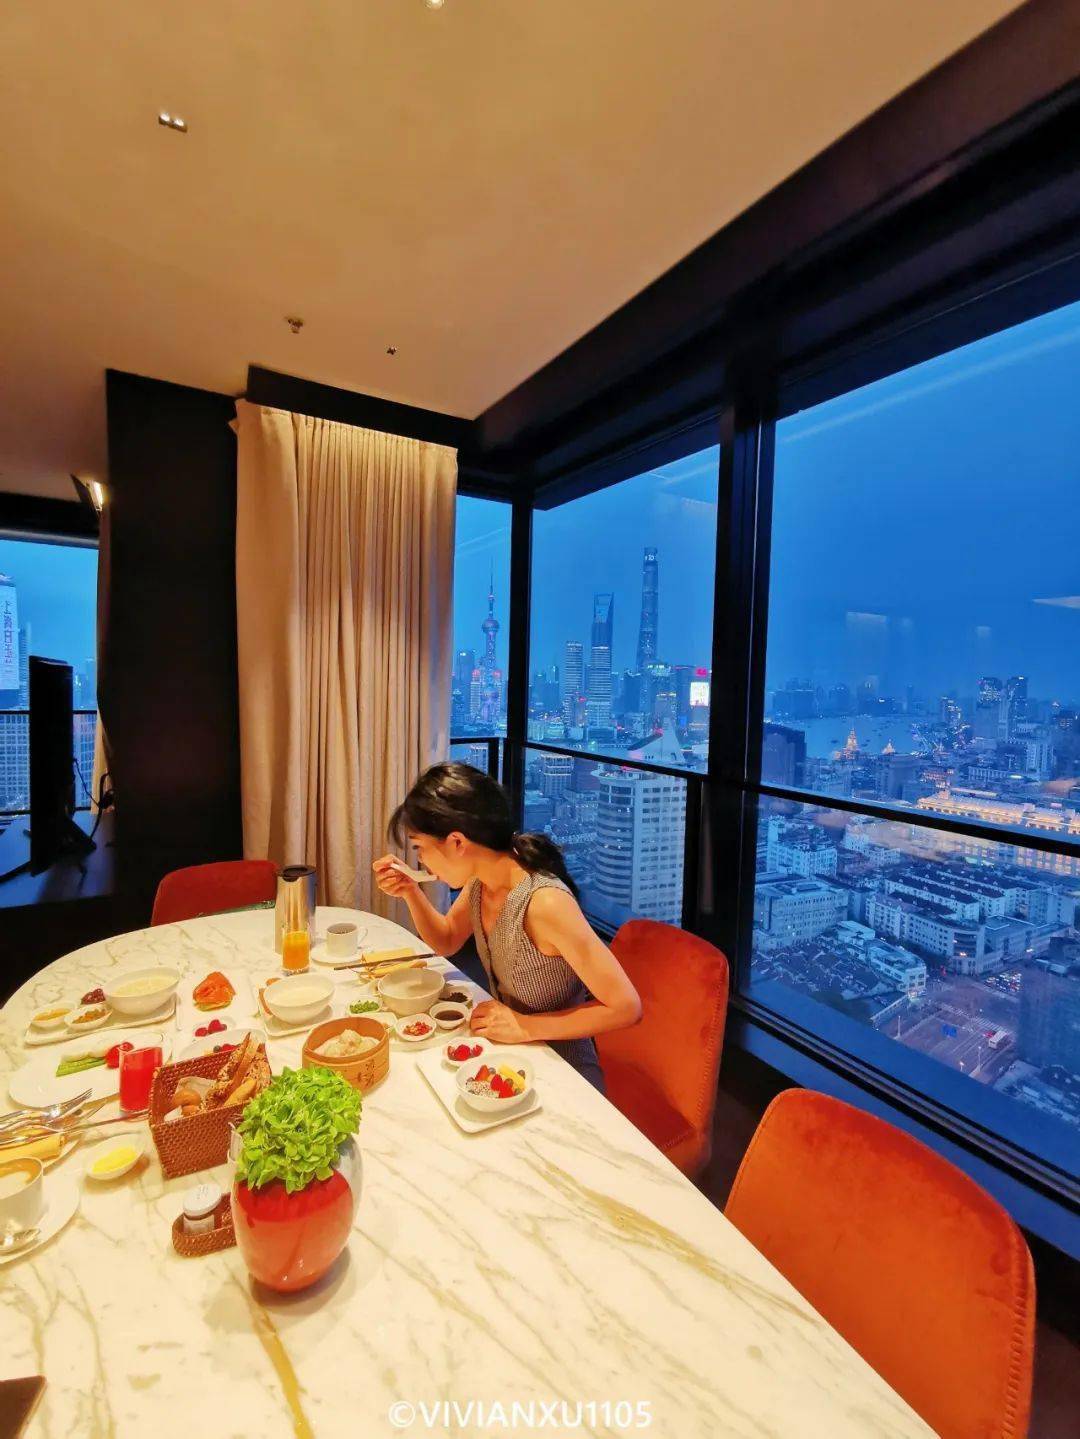 上海一酒店推出“无忧避世套餐”_联通推出0月租套餐2018_马尔代夫推出工作度假套餐